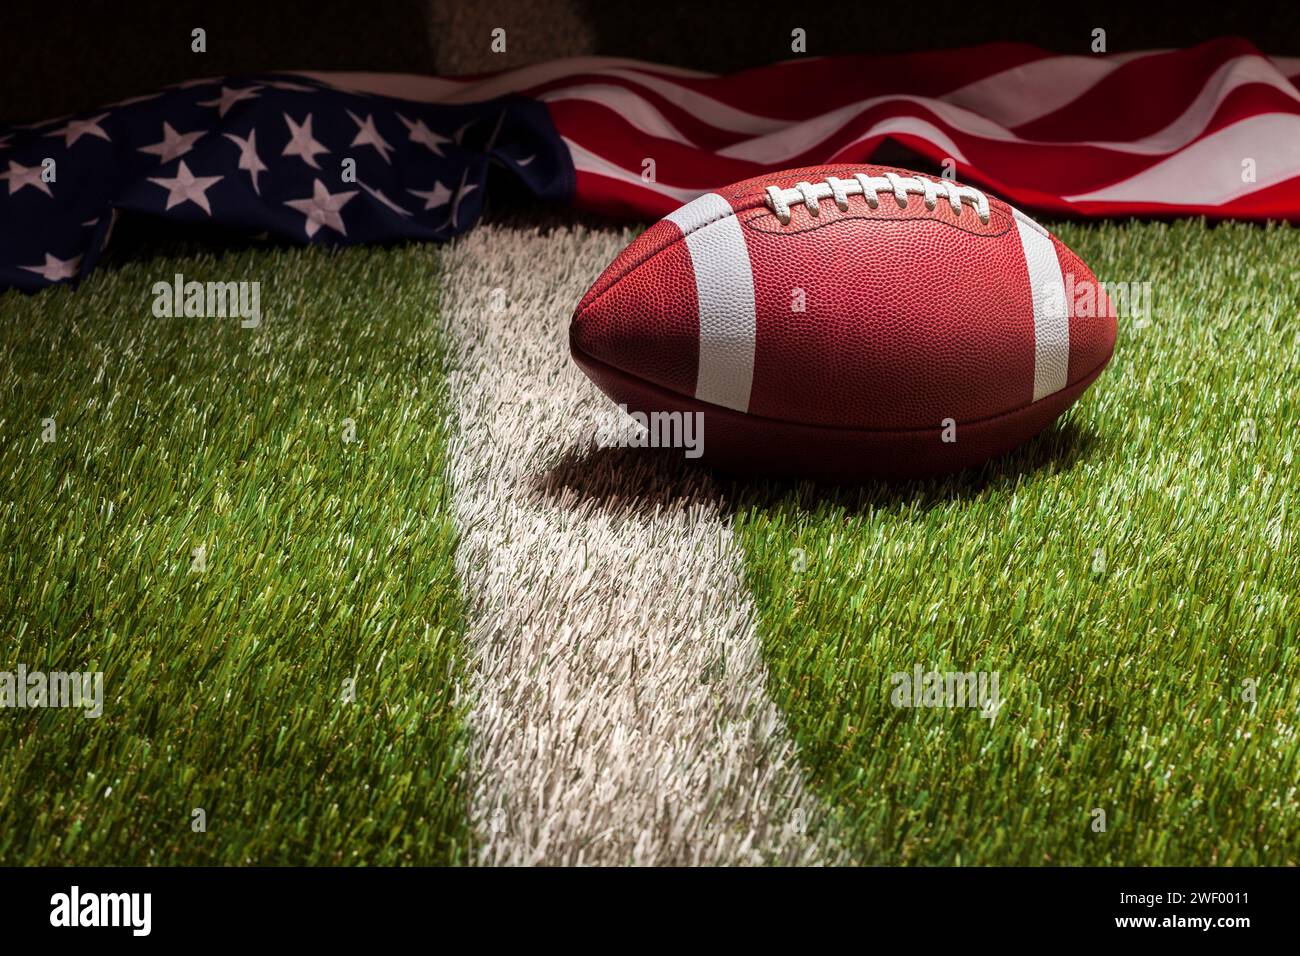 Un drapeau de football et américain sur le terrain d'herbe avec rayure dans la lumière dramatique Banque D'Images